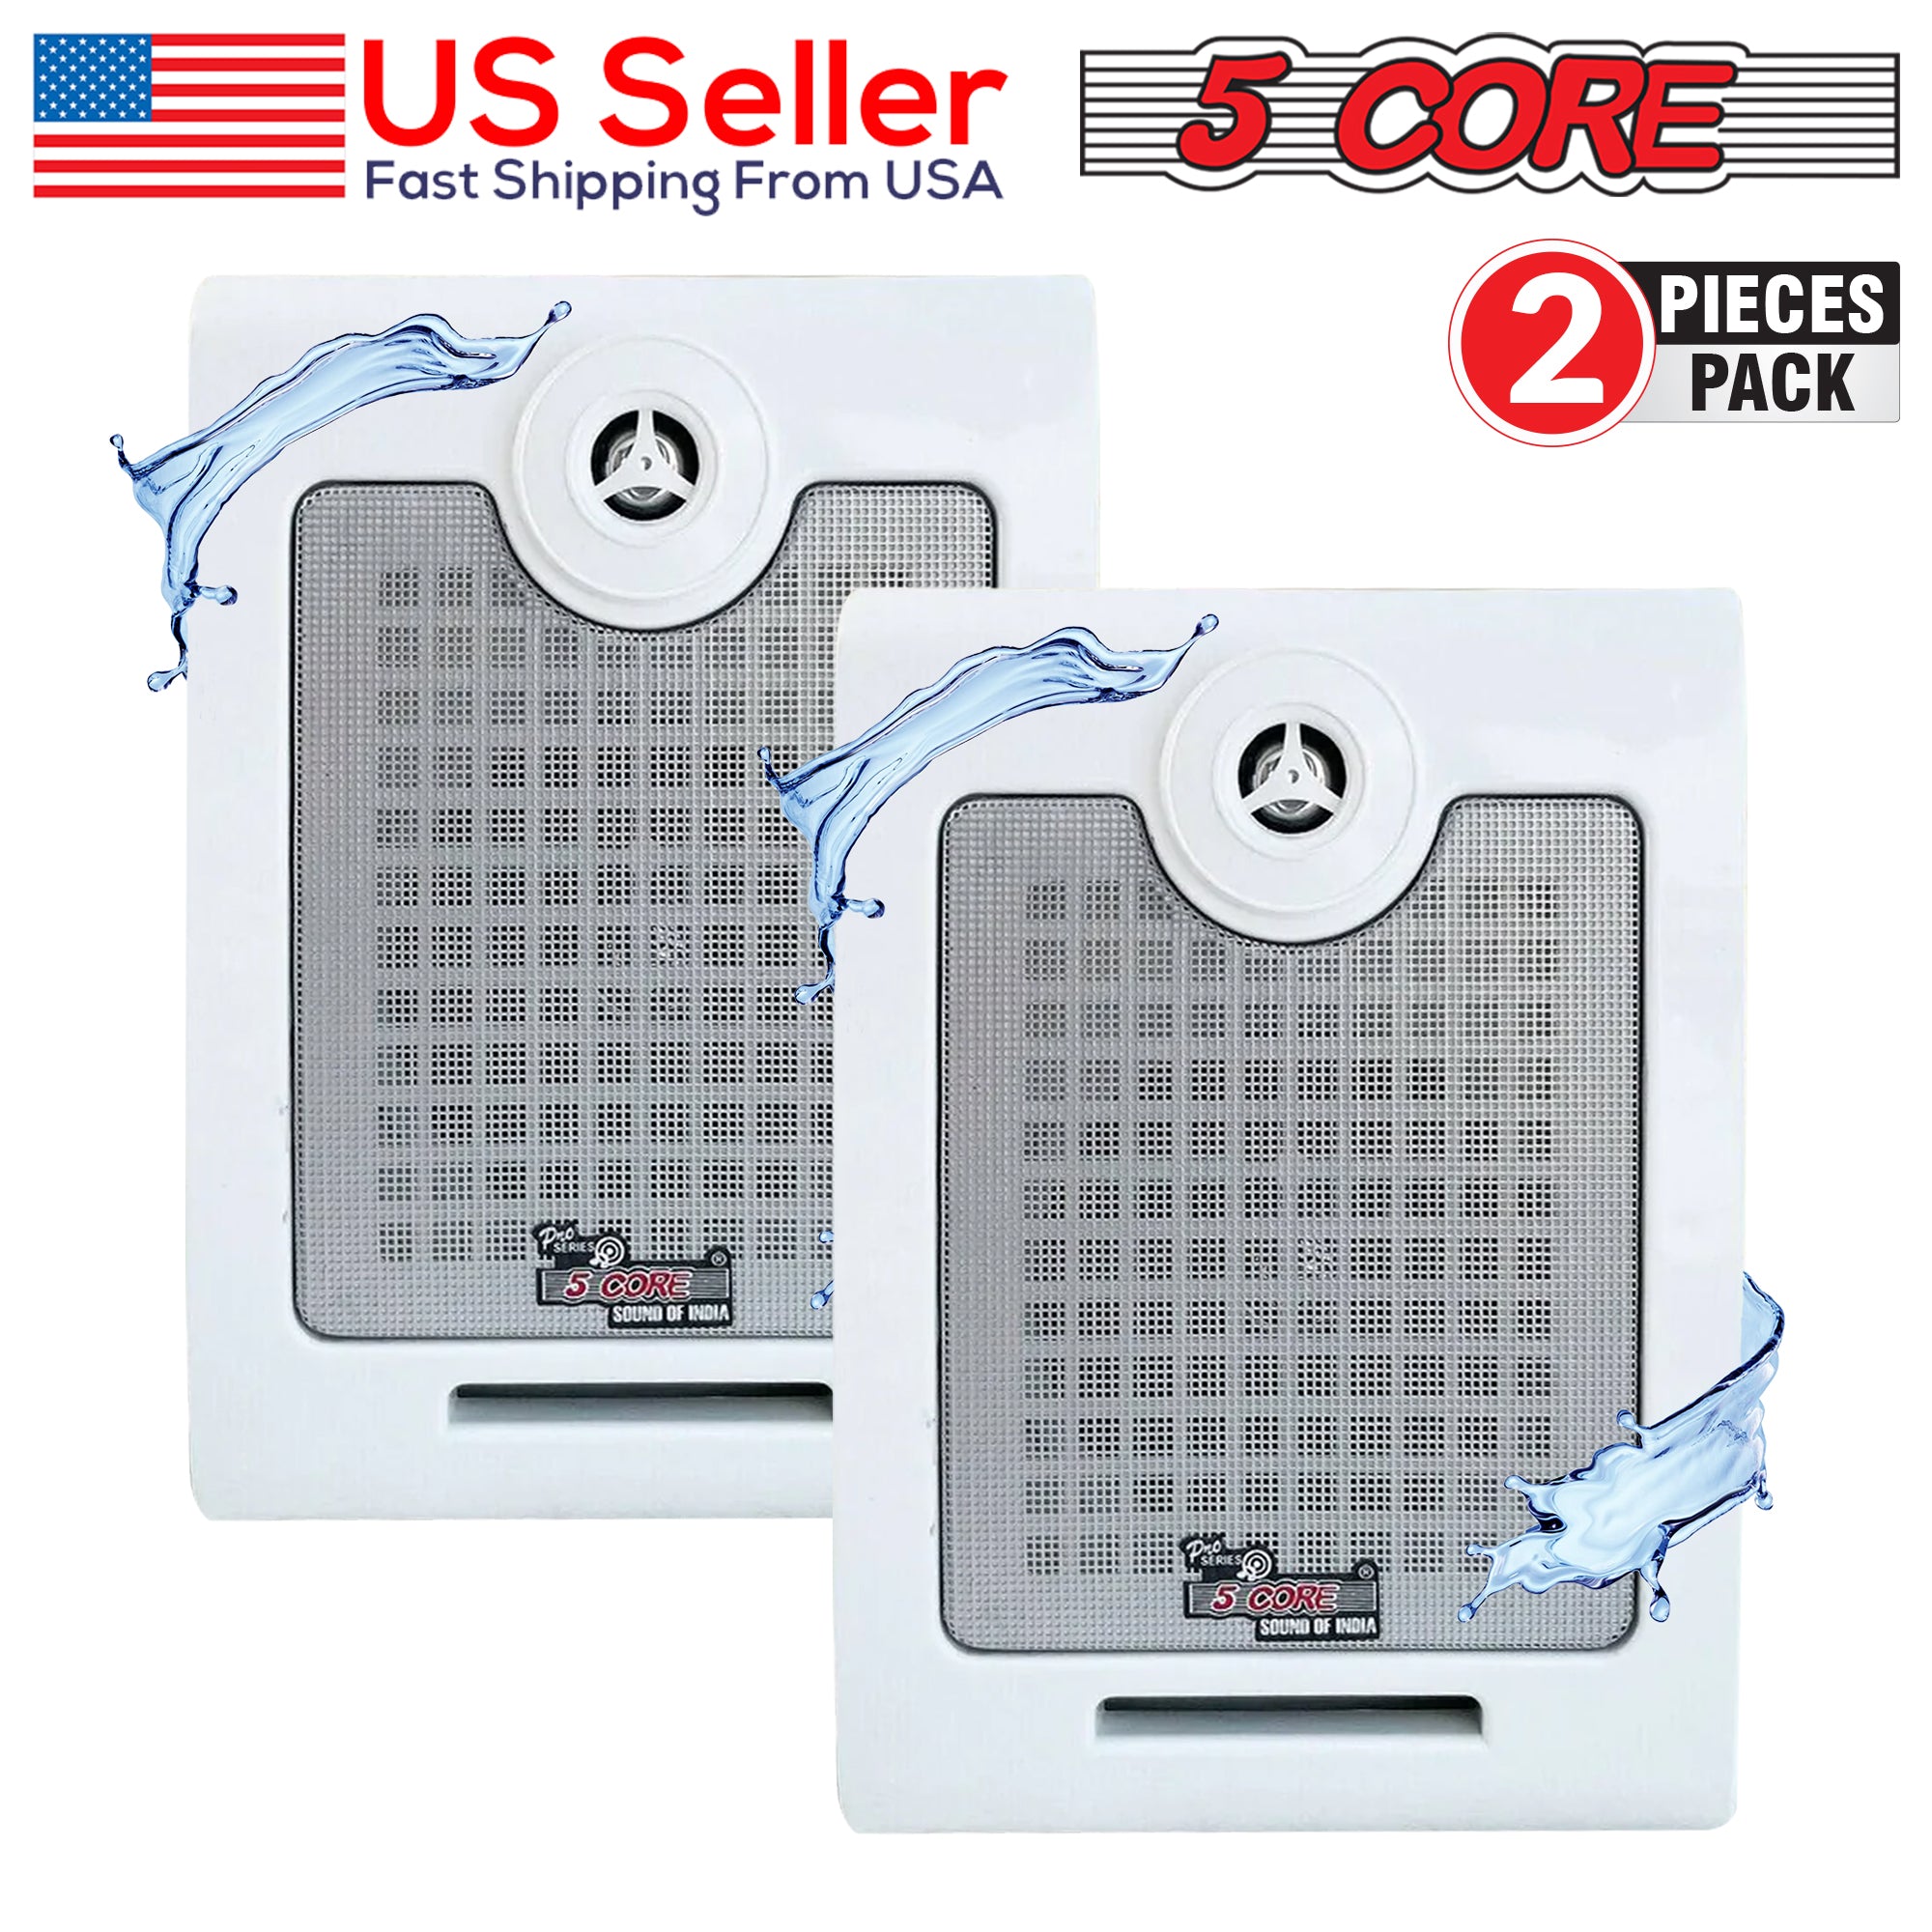 5 Core Wall Speaker System 2Pack 2 Way 200W PMPO Power • Heavy Duty Waterproof Wall Mount Speakers